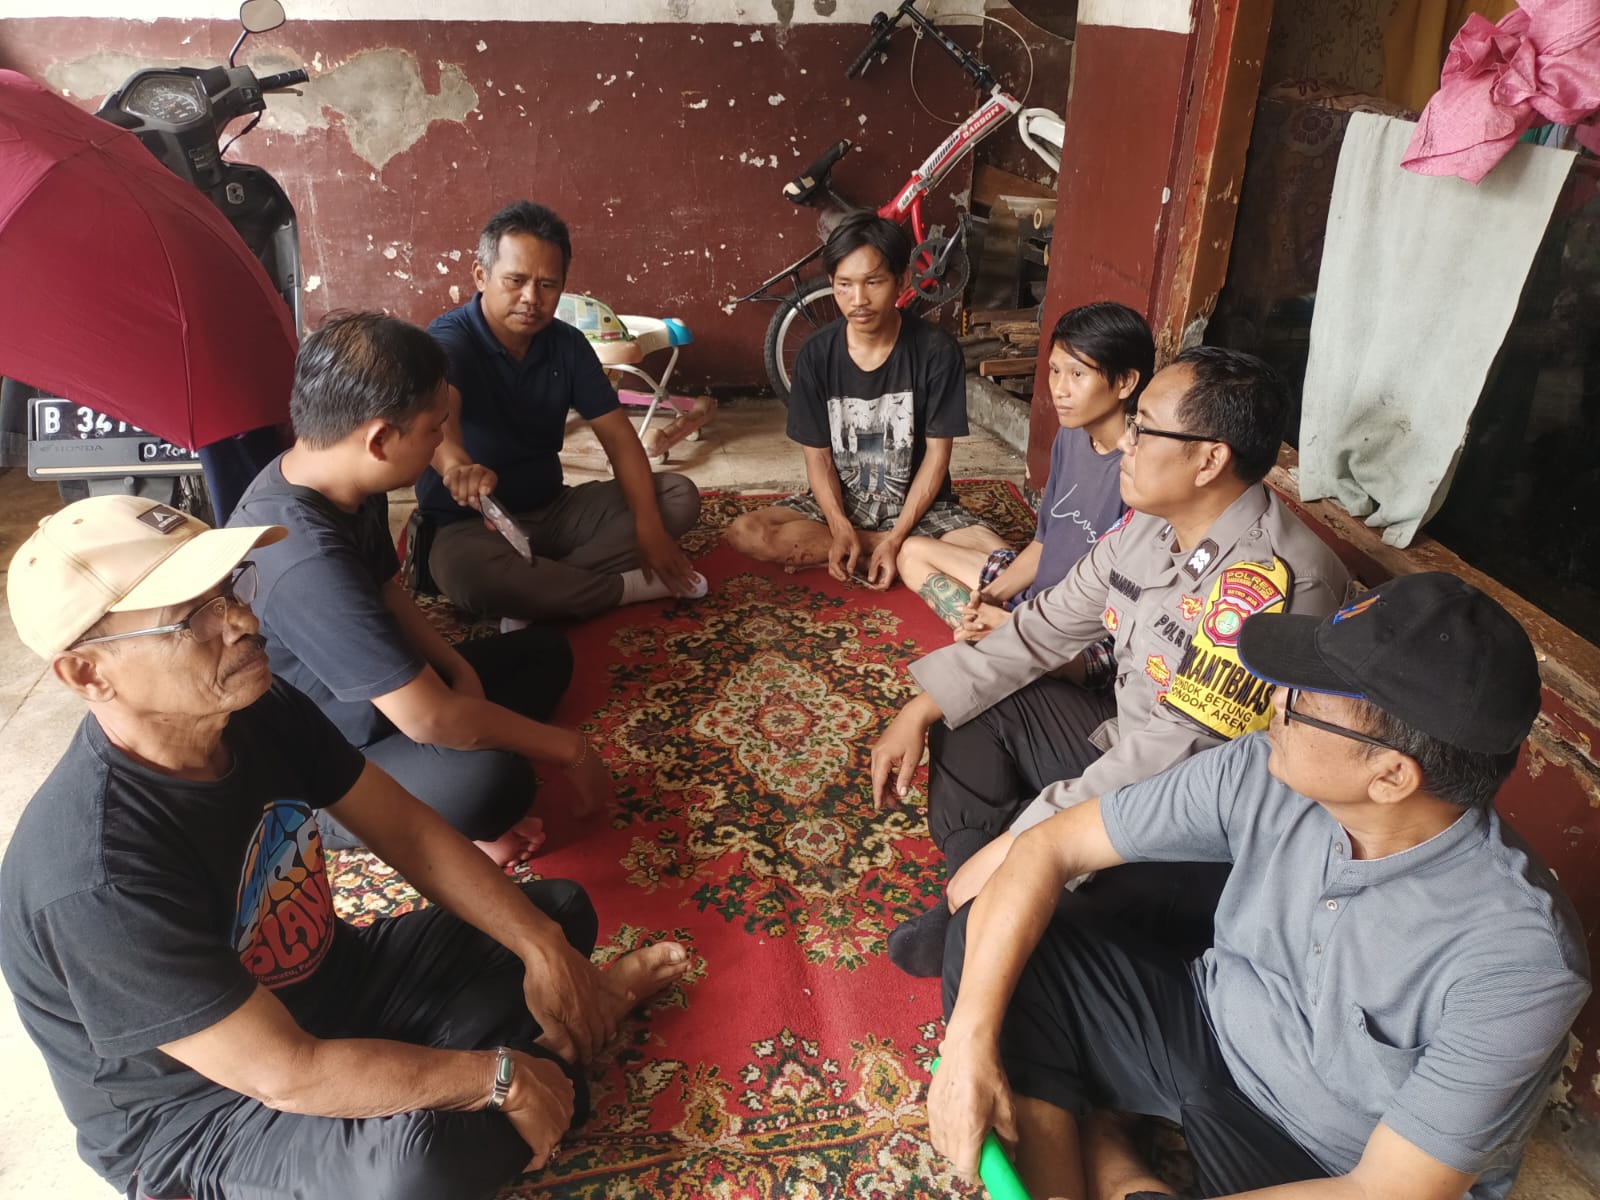 Pencurian di Warung Sembako Pondok Aren Berujung Restorative Justice